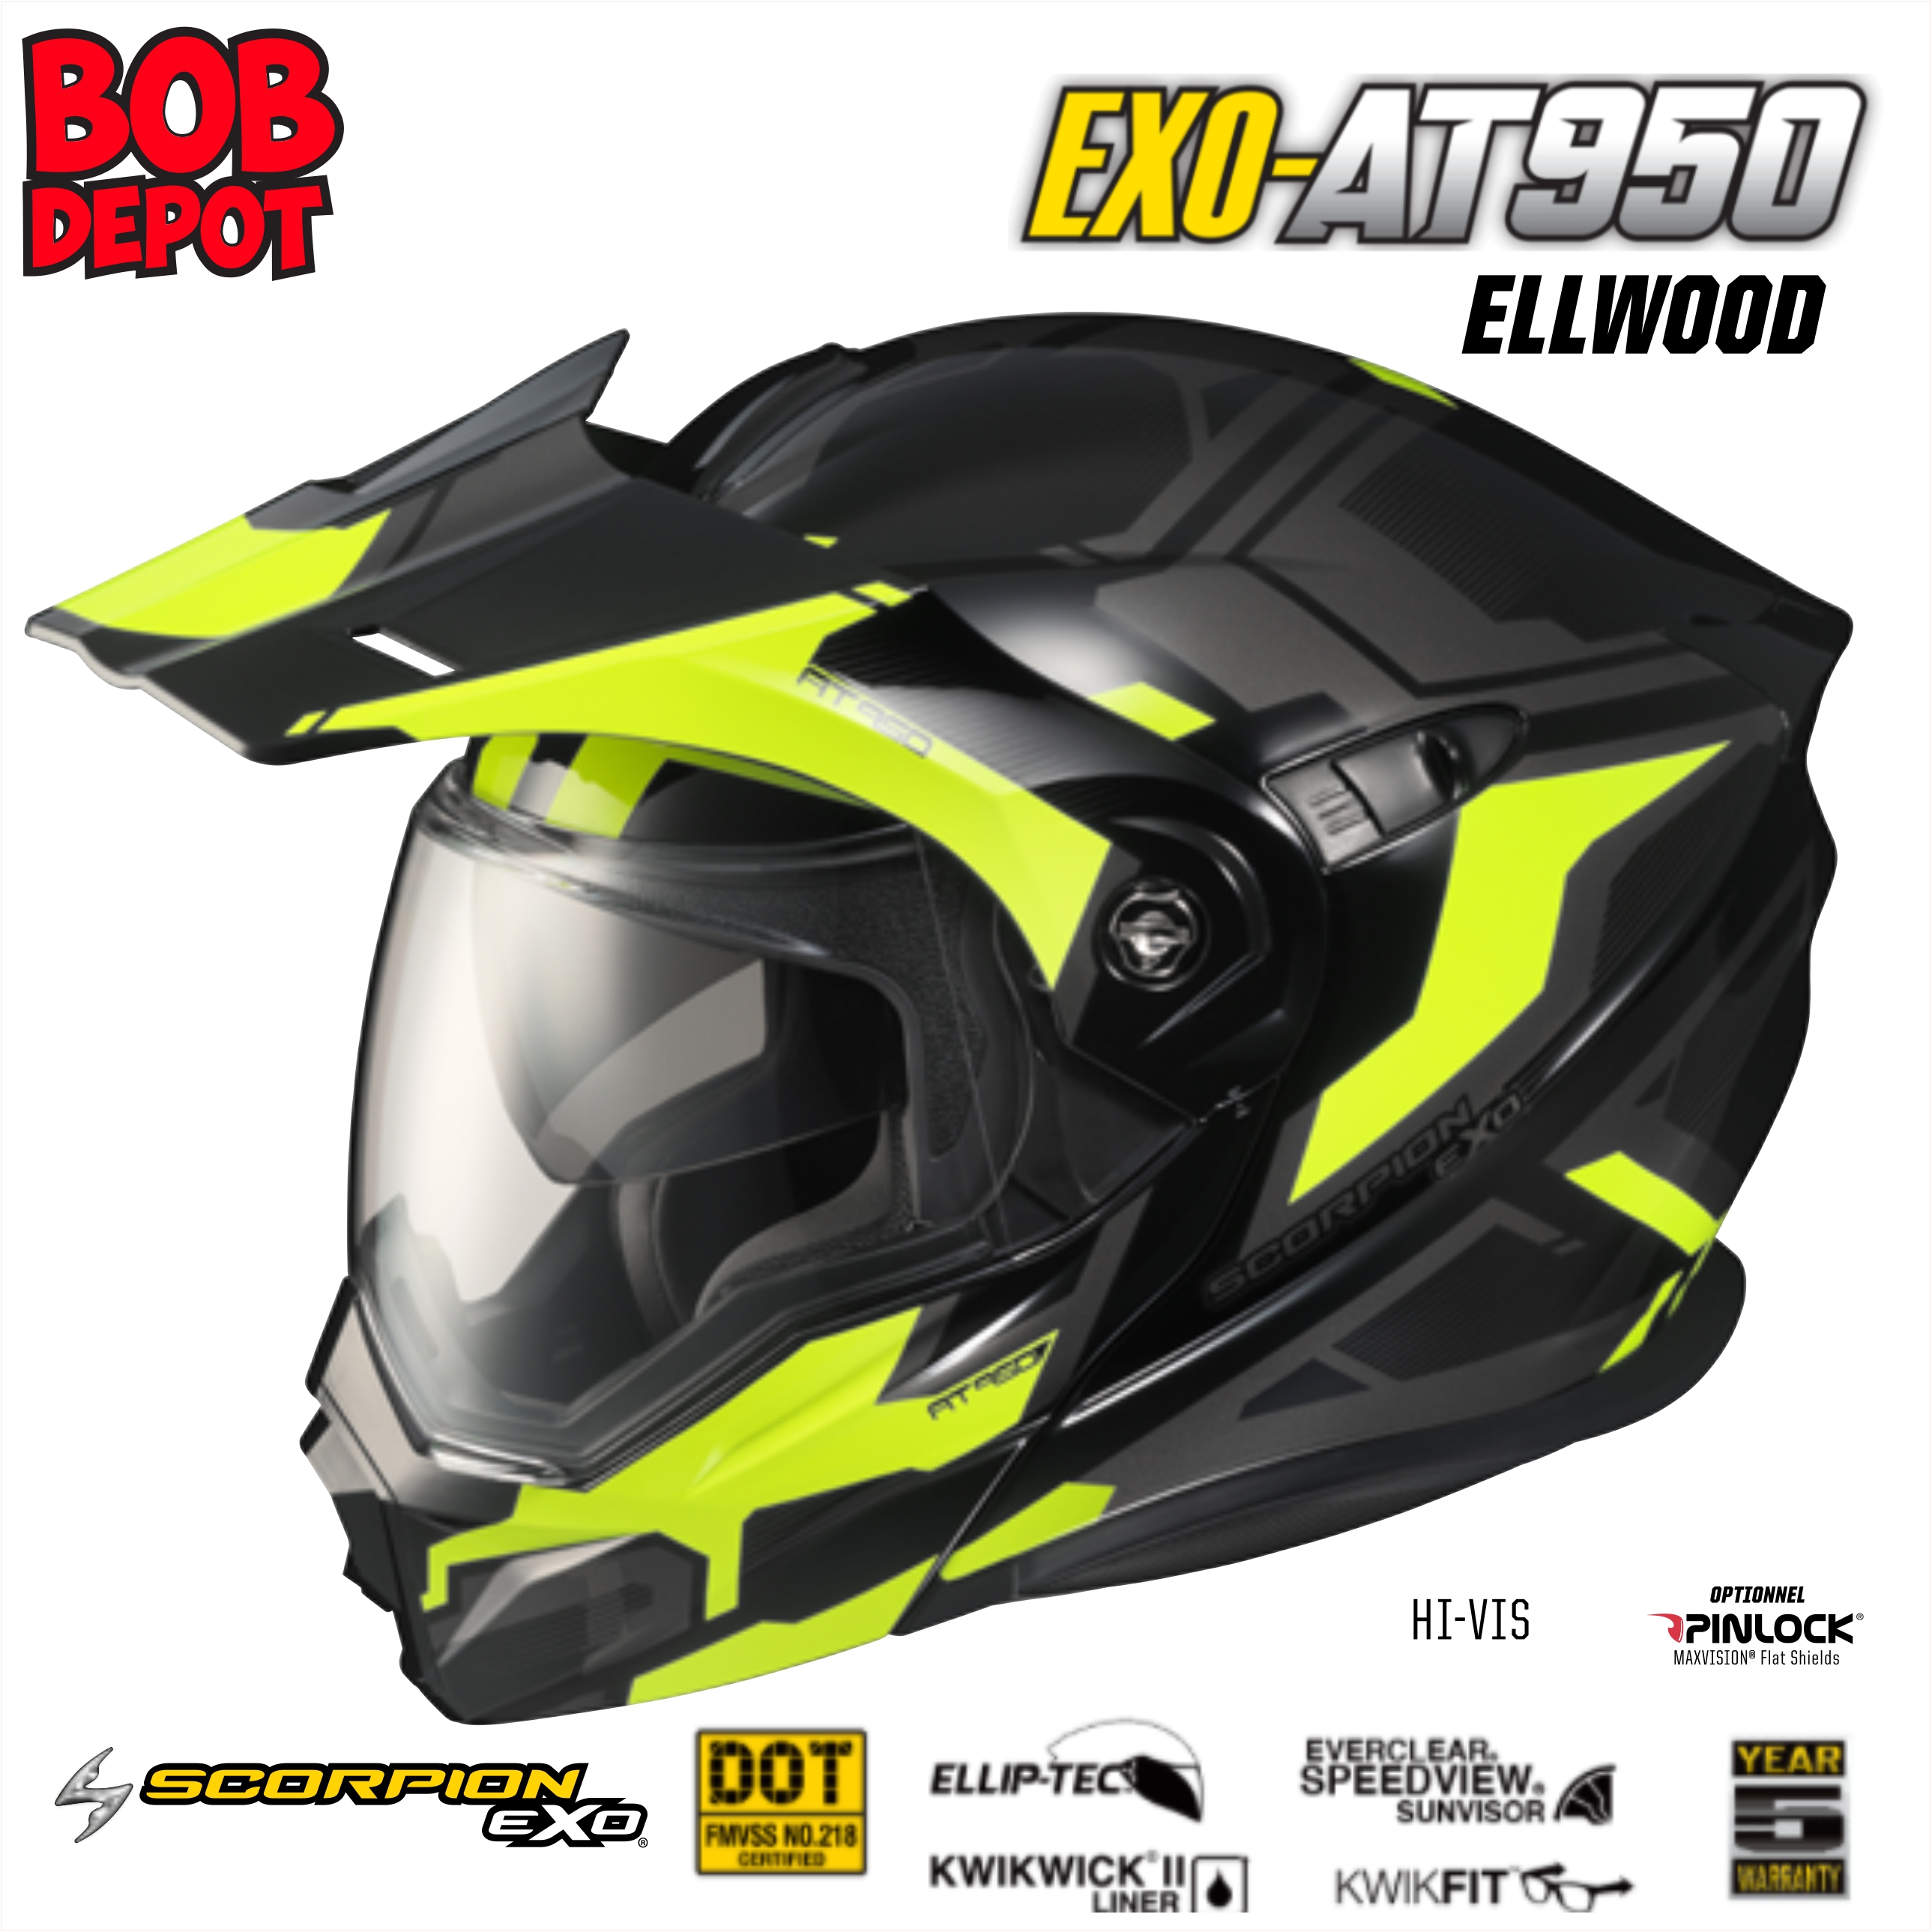 Casque Moto Modulaire EXO-AT950 ELLWOOD - Hi-Viz